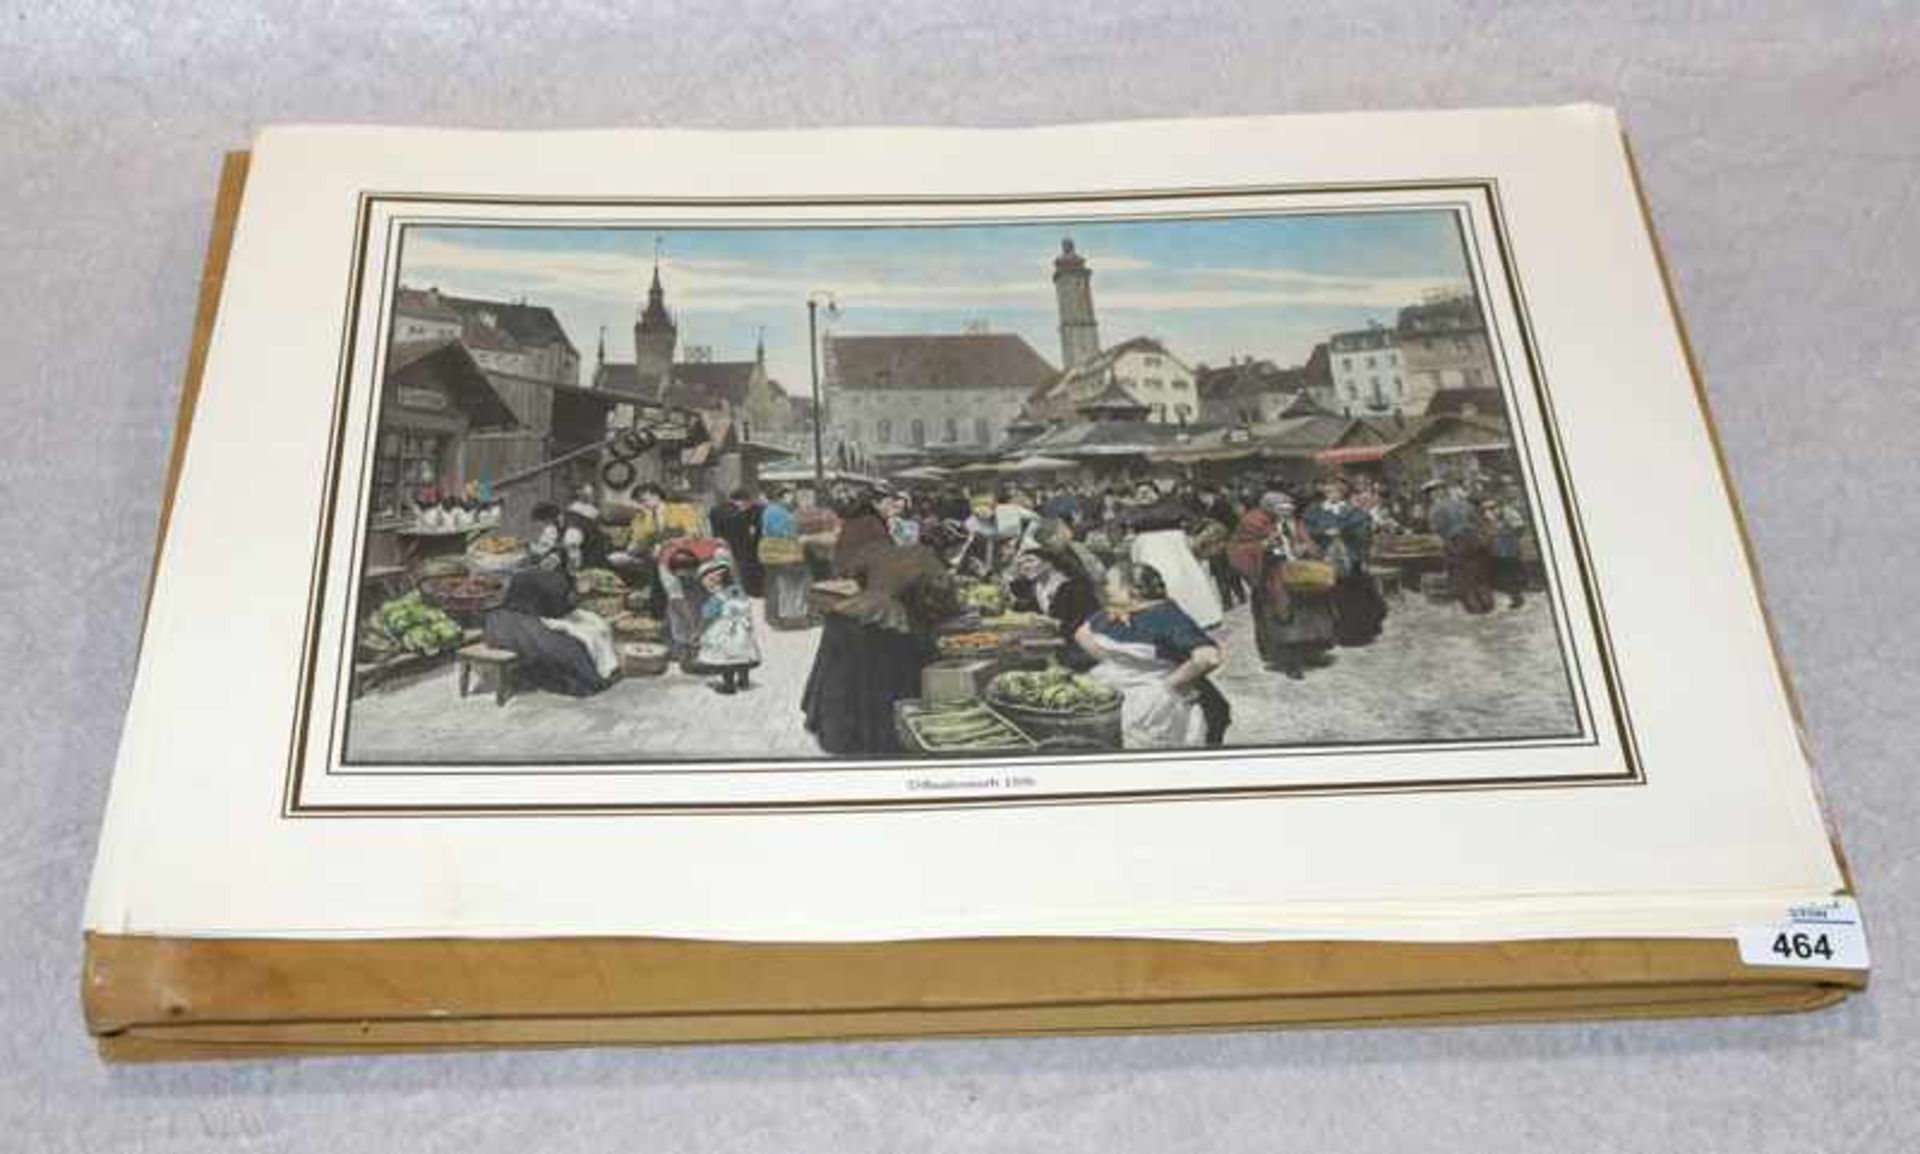 Kunstmappe 'Das waren Zeiten - München', in der zweiten Hälfte des 19. Jahrhunderts, sieben